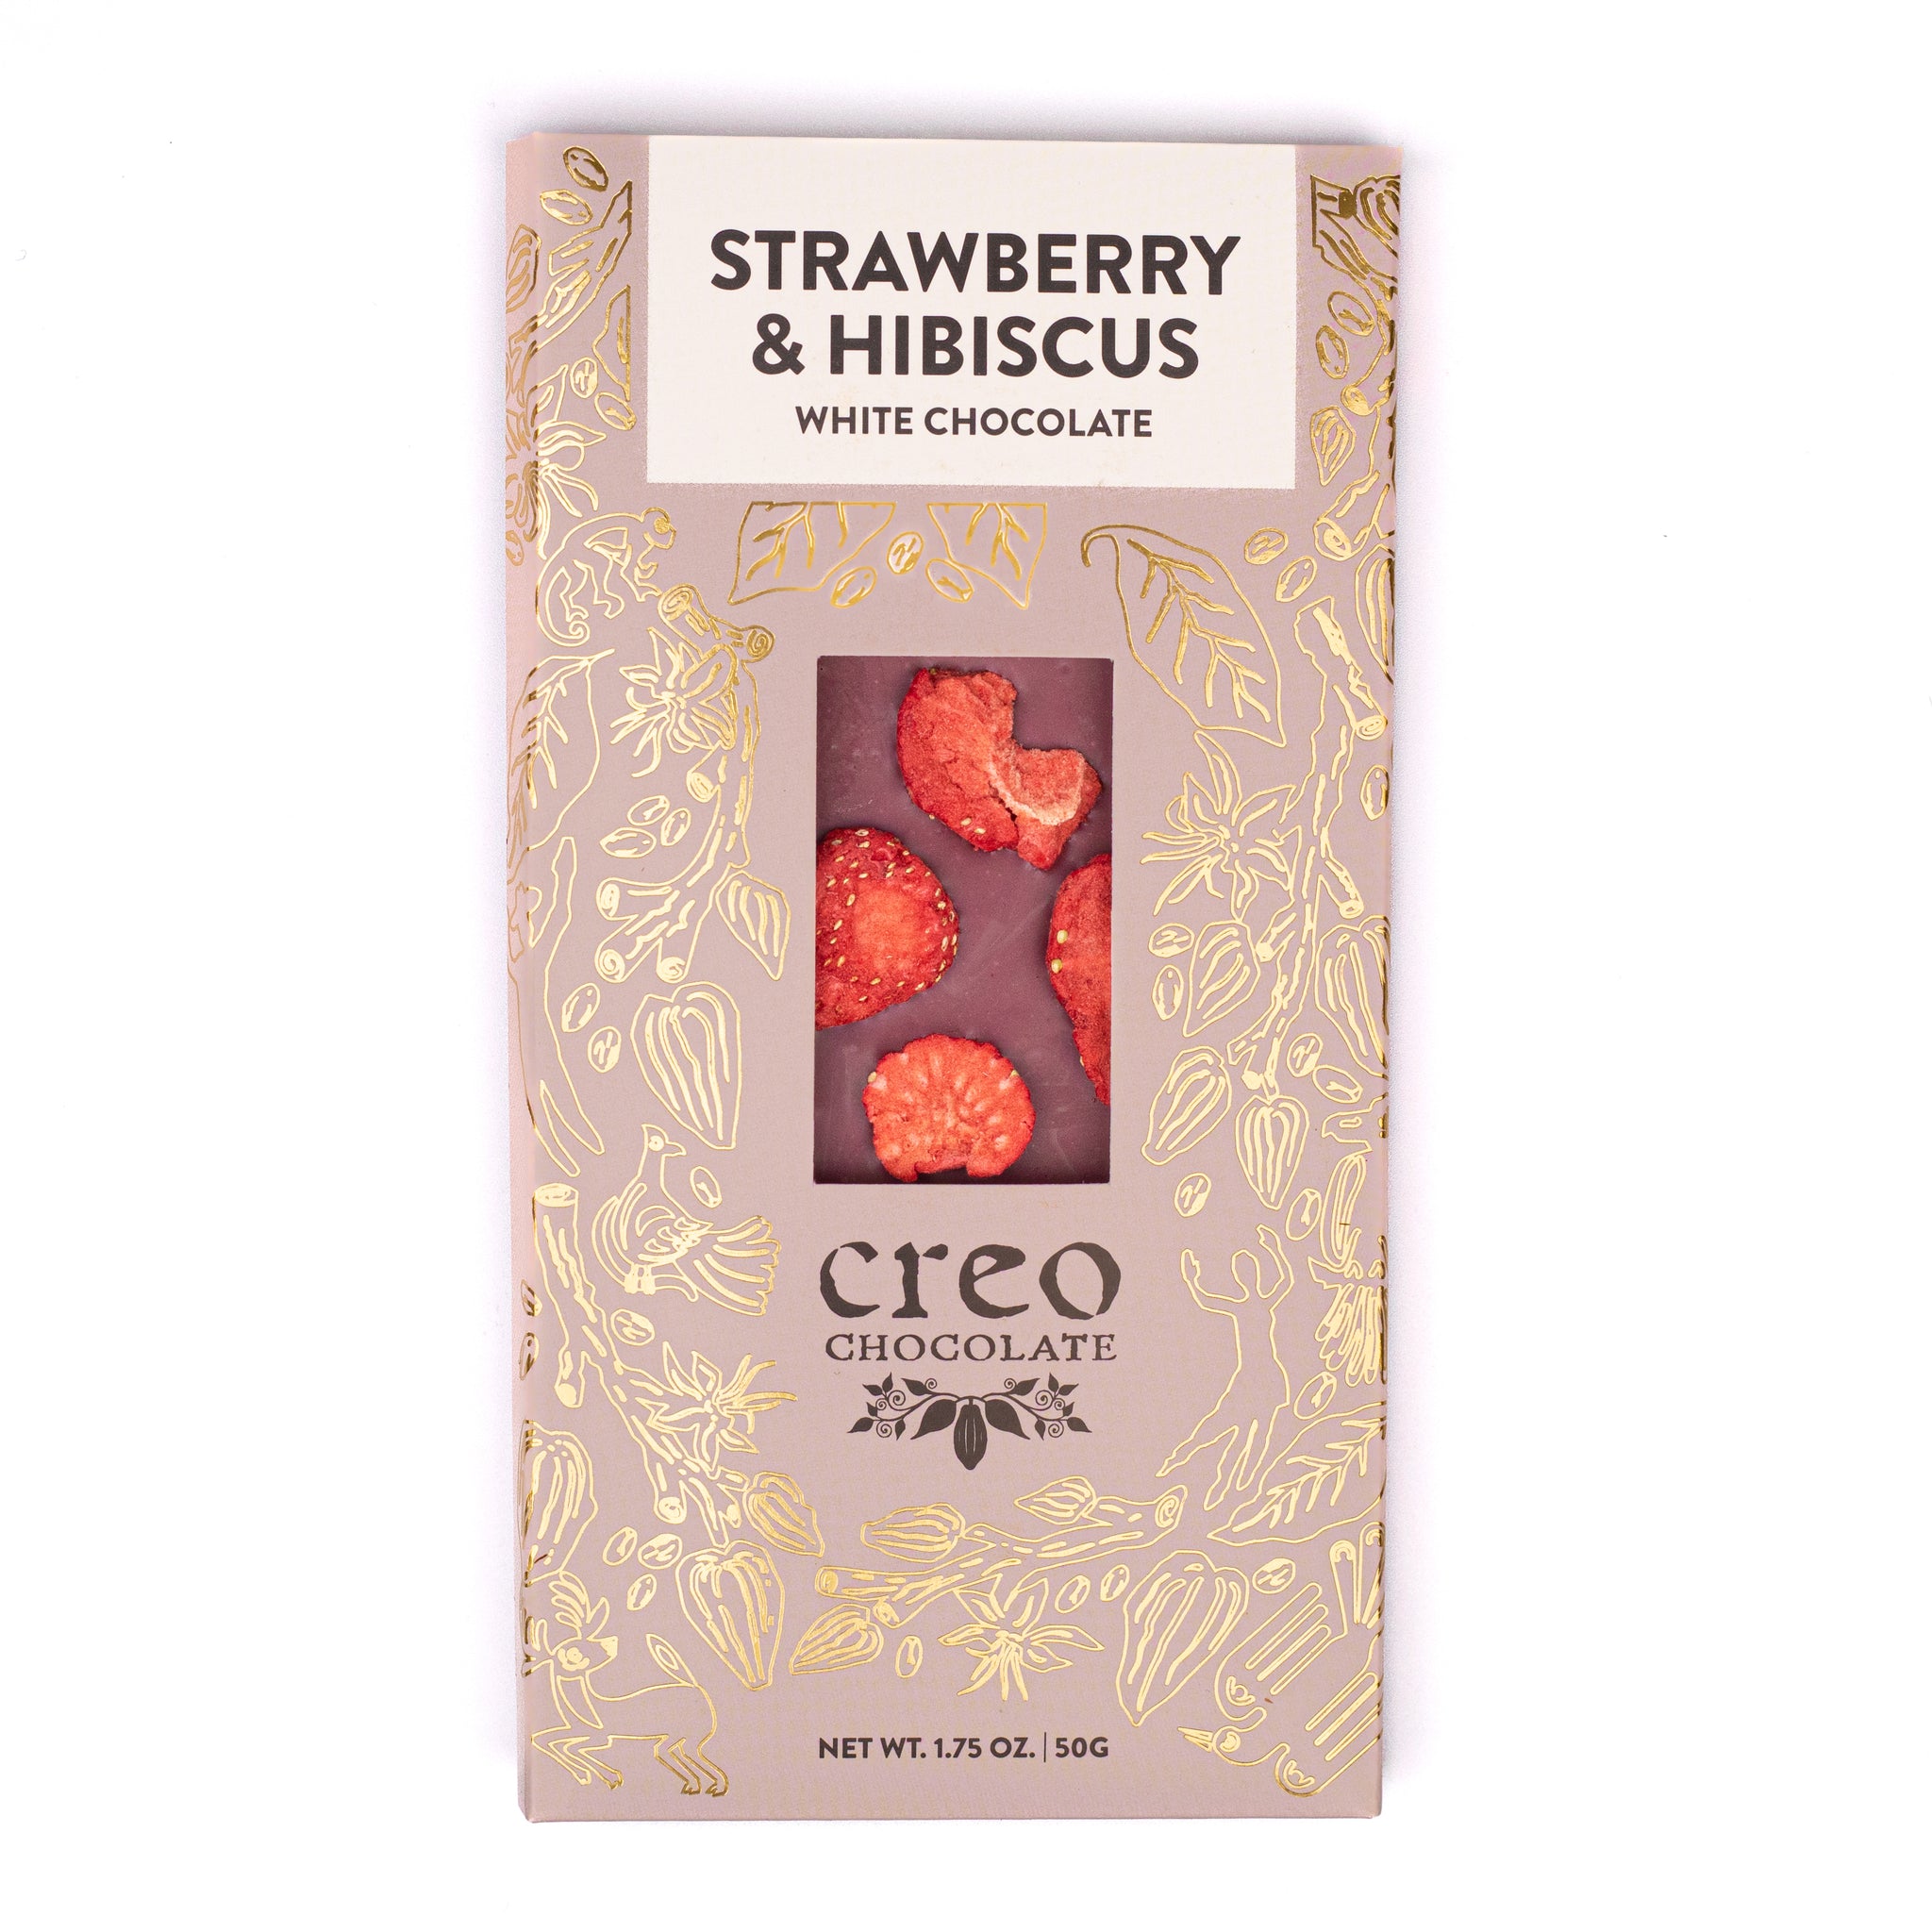 Strawberry & Hibiscus White Chocolate Bar